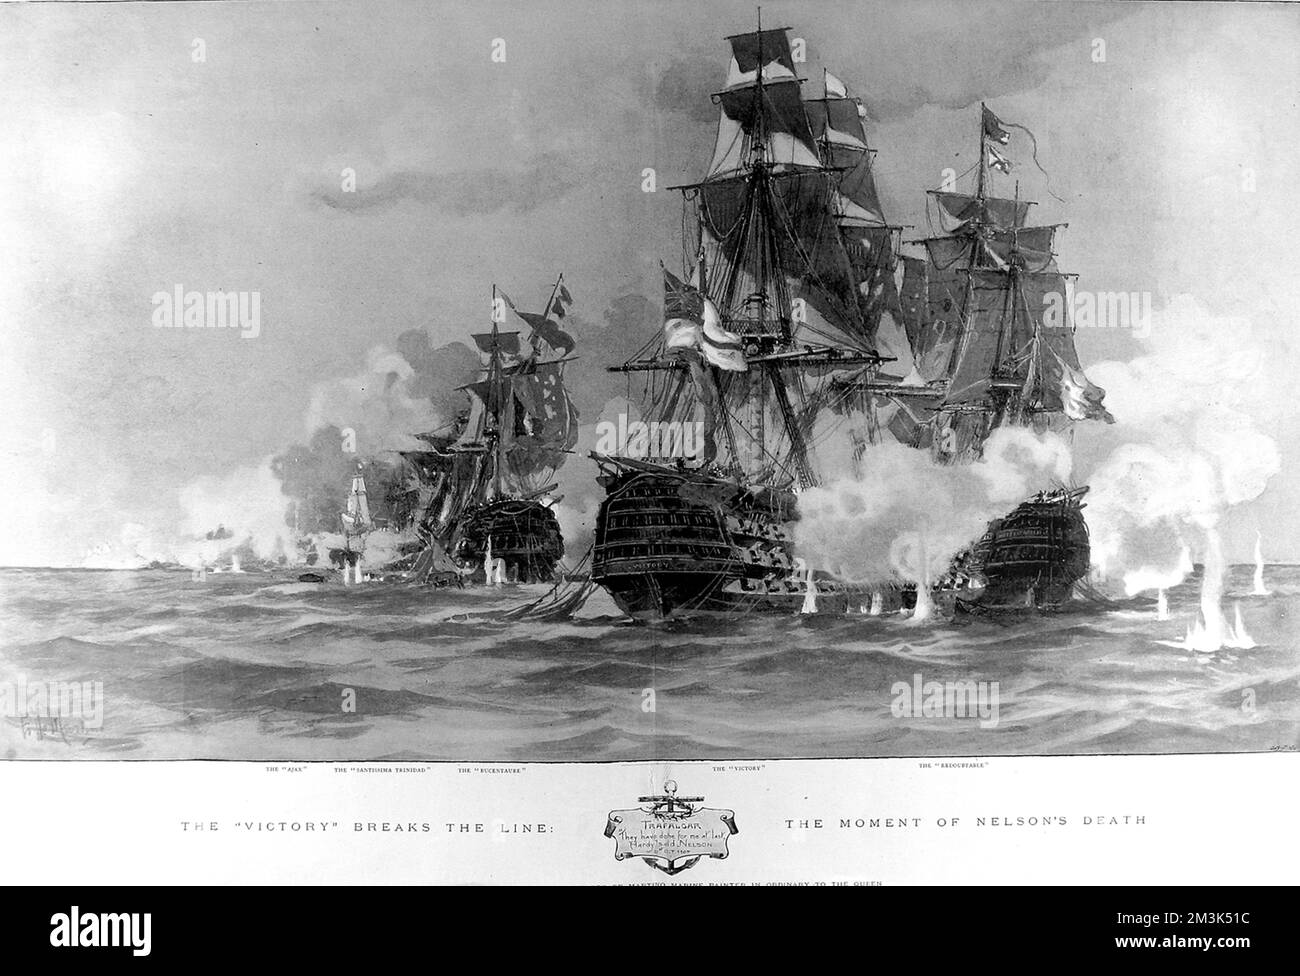 Le moment de la bataille de Trafalgar, le 21 octobre 1805, où le HMS 'victoire' a traversé la ligne ennemie et aussi le moment des blessures mortelles de Nelson. Il montre les positions des navires, Ajax, Santissima Trinidad, Bucentaure, la victoire et la redoute. Date : 21 octobre 1805 Banque D'Images